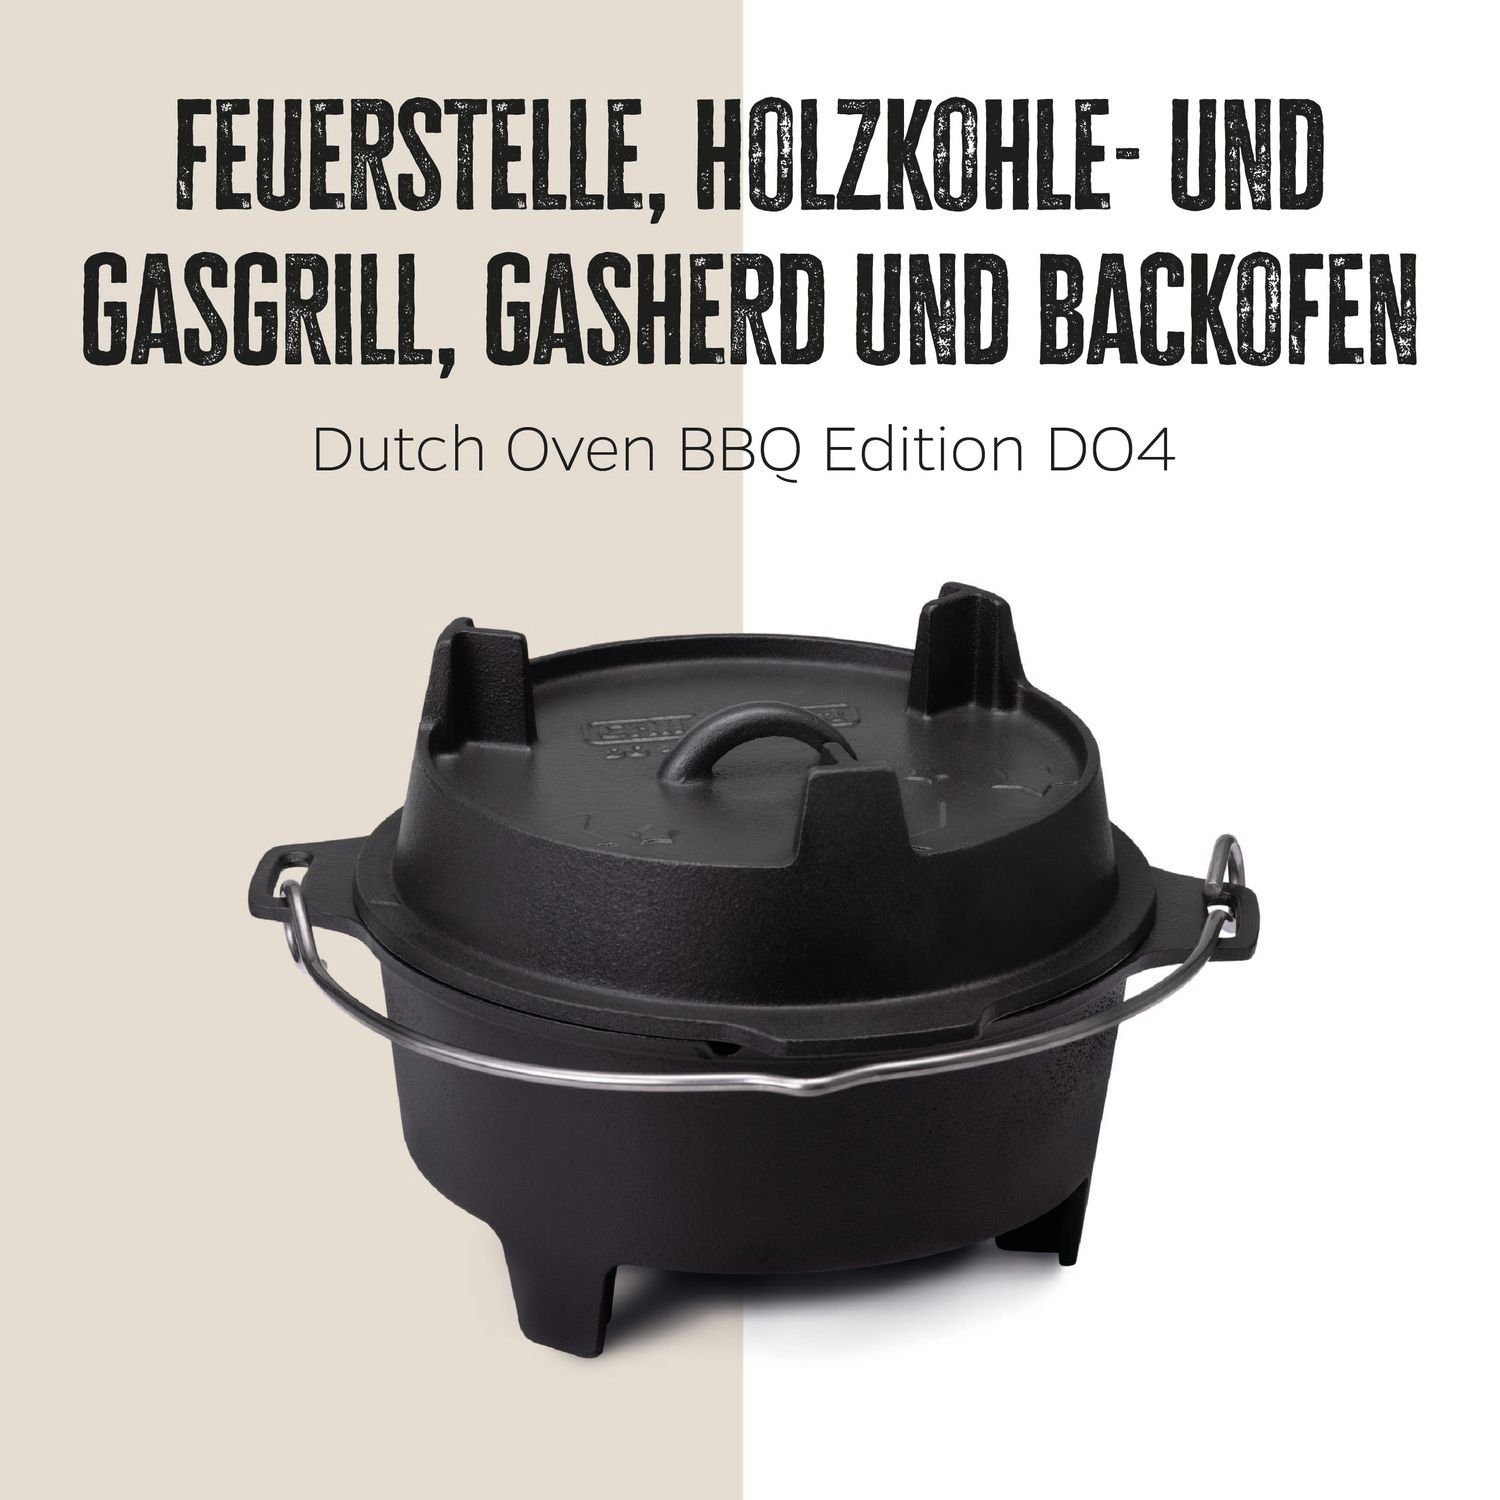 Grillfürst Bratentopf Grillfürst Dutch Oven BBQ Edition DO4